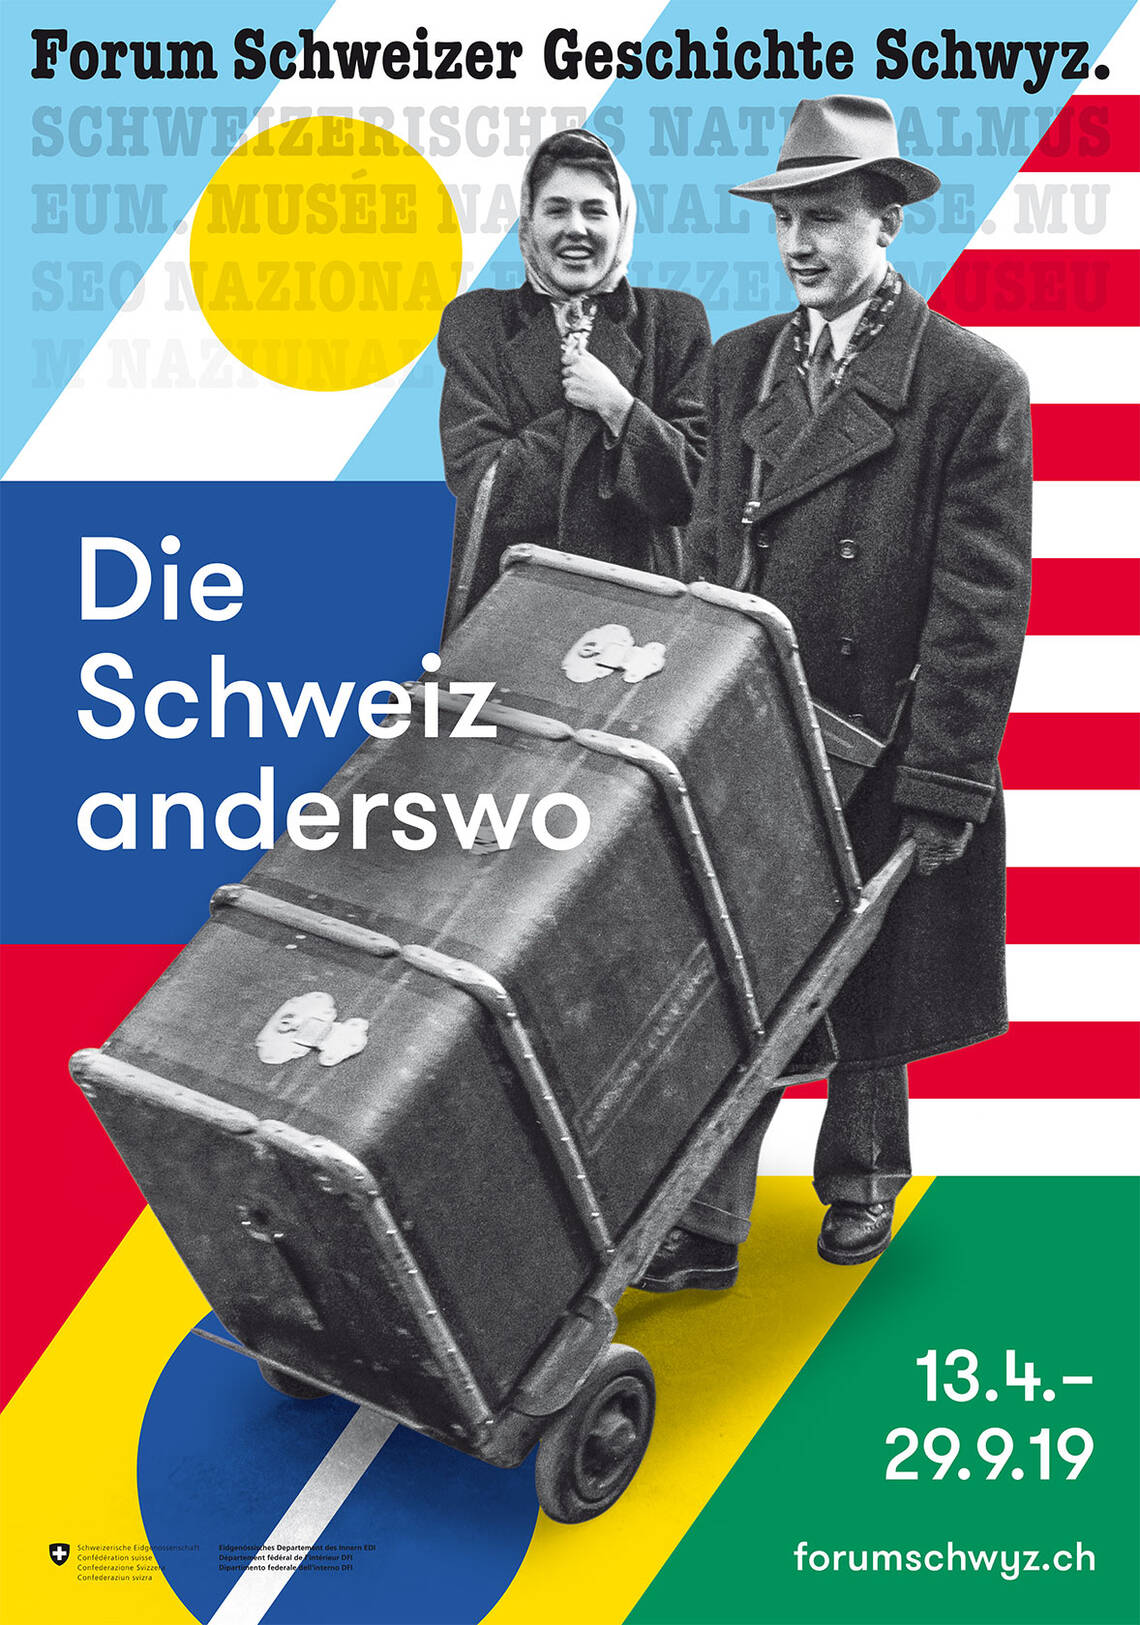 Keyvisual der Ausstellung "Die Schweiz anderswo" - es zeigt ein Ehepaar, der Mann stösst einen grossen Überseekoffer